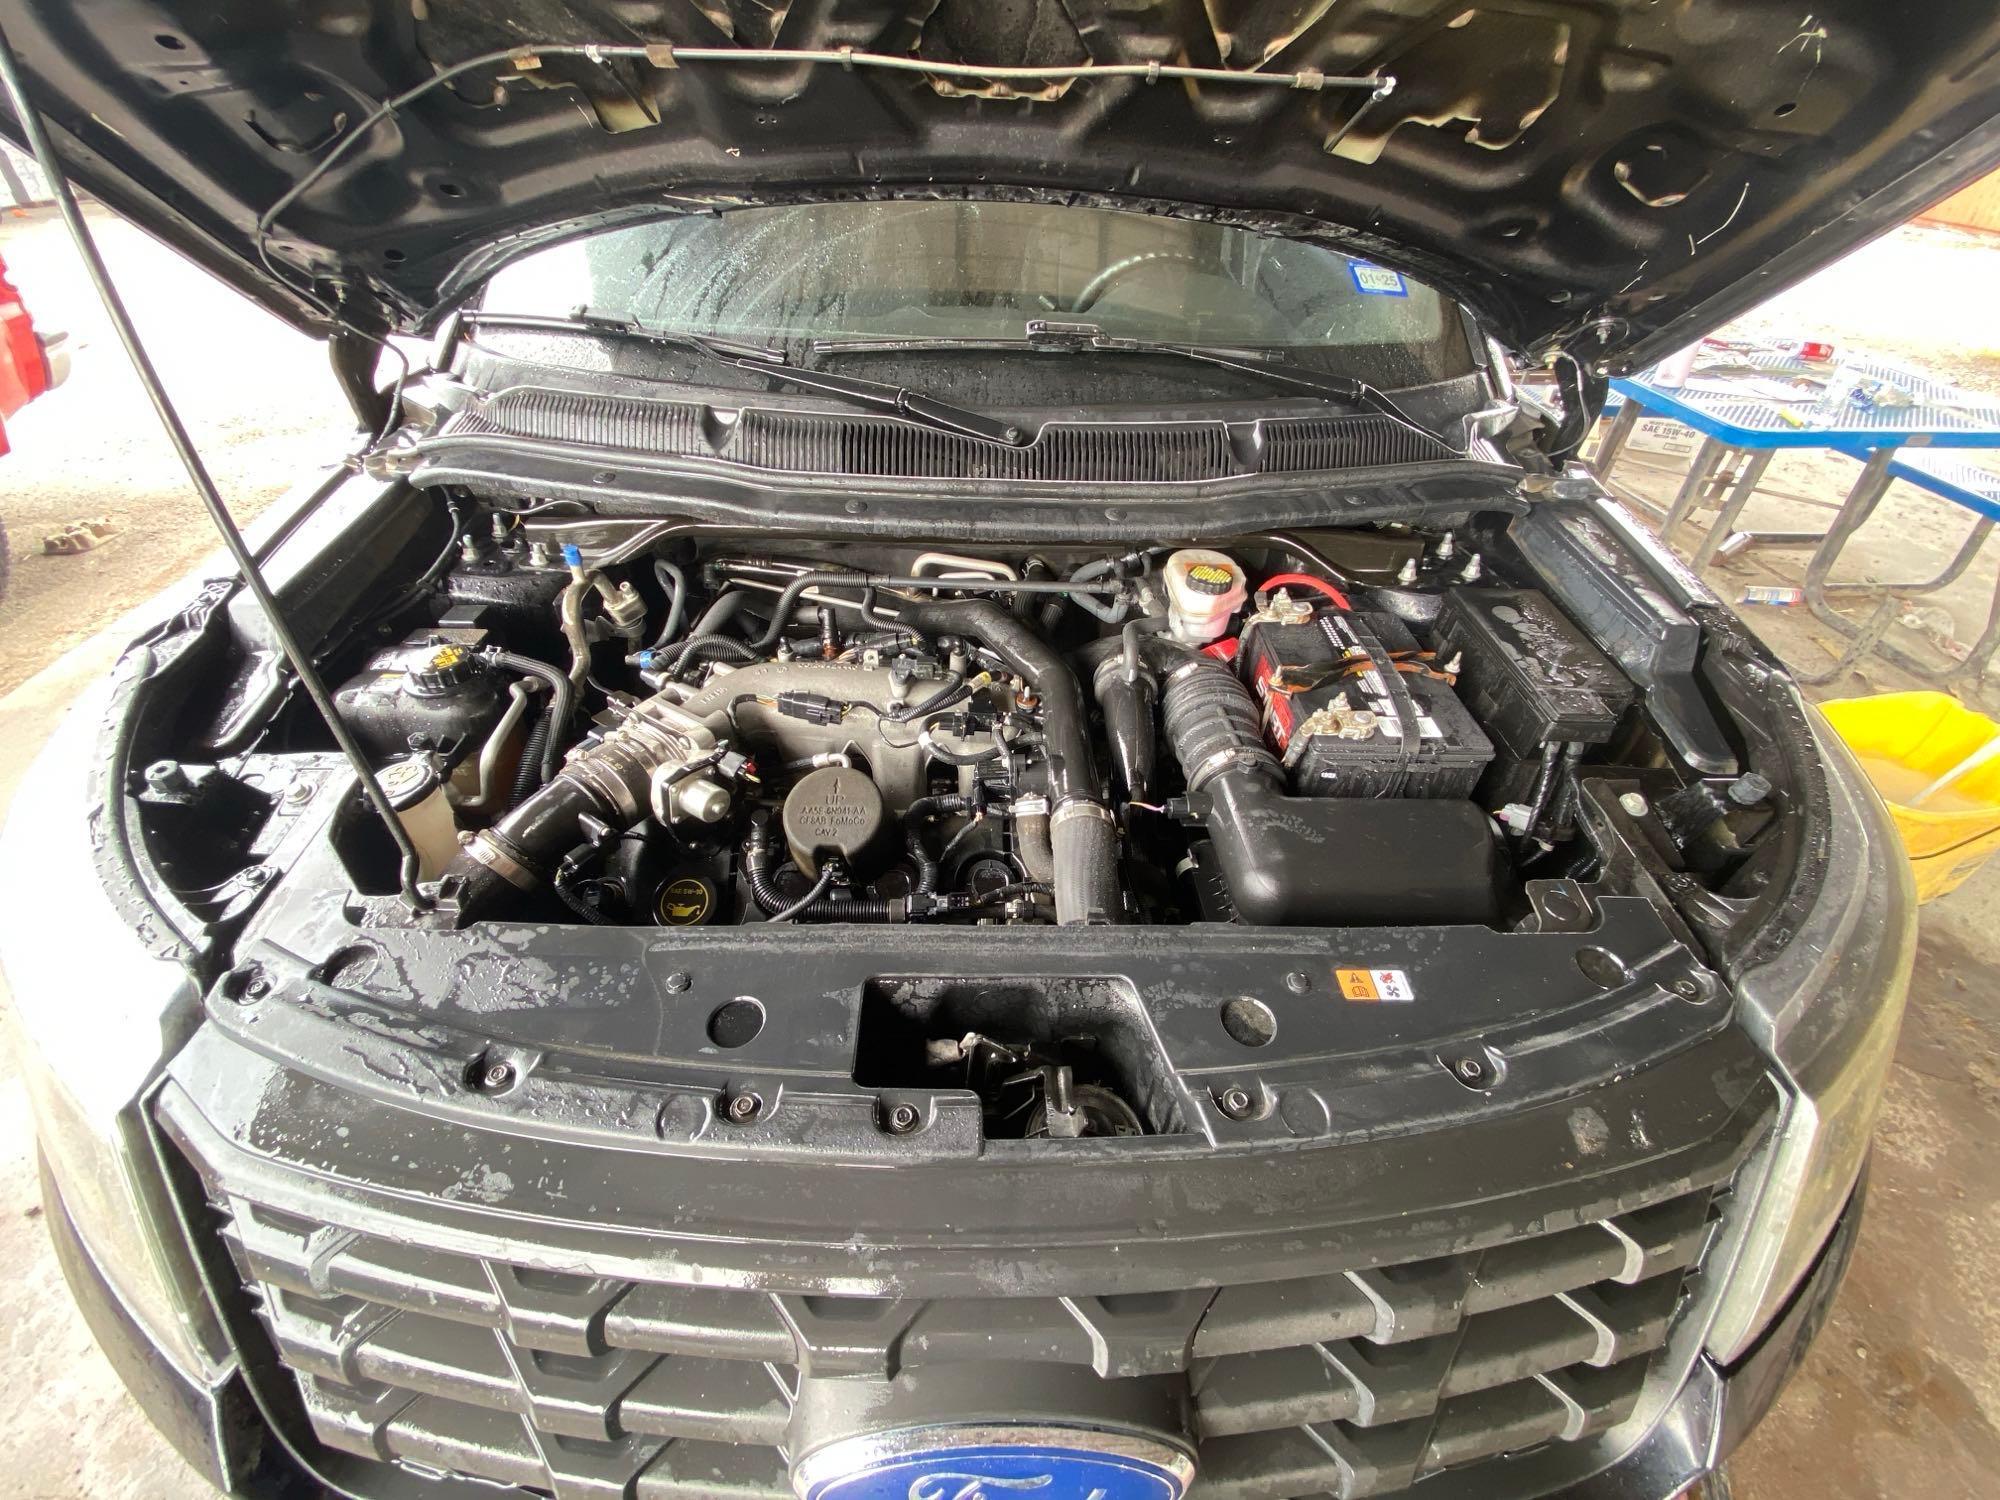 2019 Ford Explorer Multipurpose Vehicle (MPV), VIN # 1FM5K8AT0KGA31603